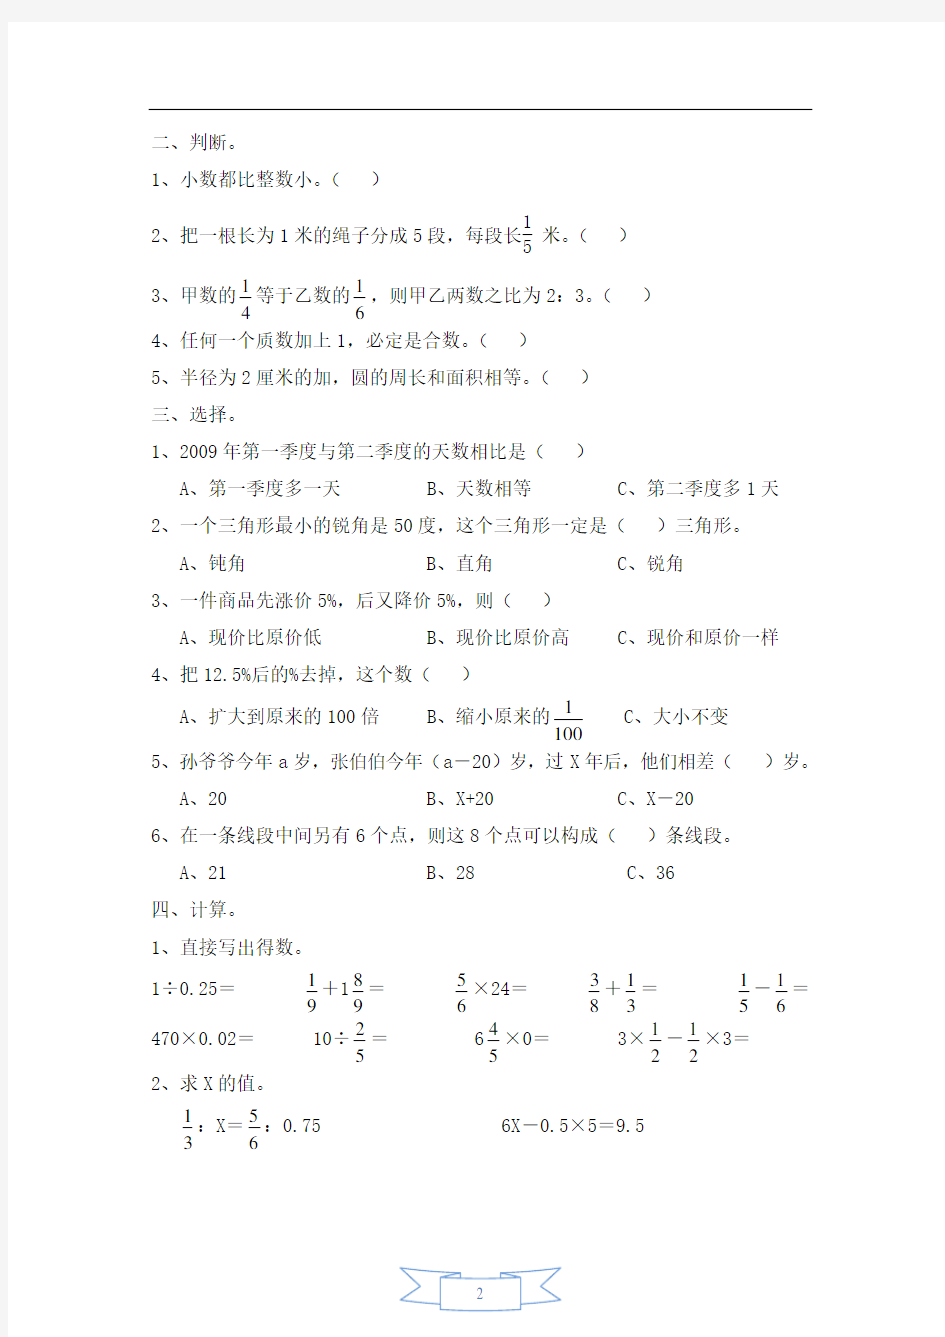 2013年小升初数学模拟试题及答案(4套)